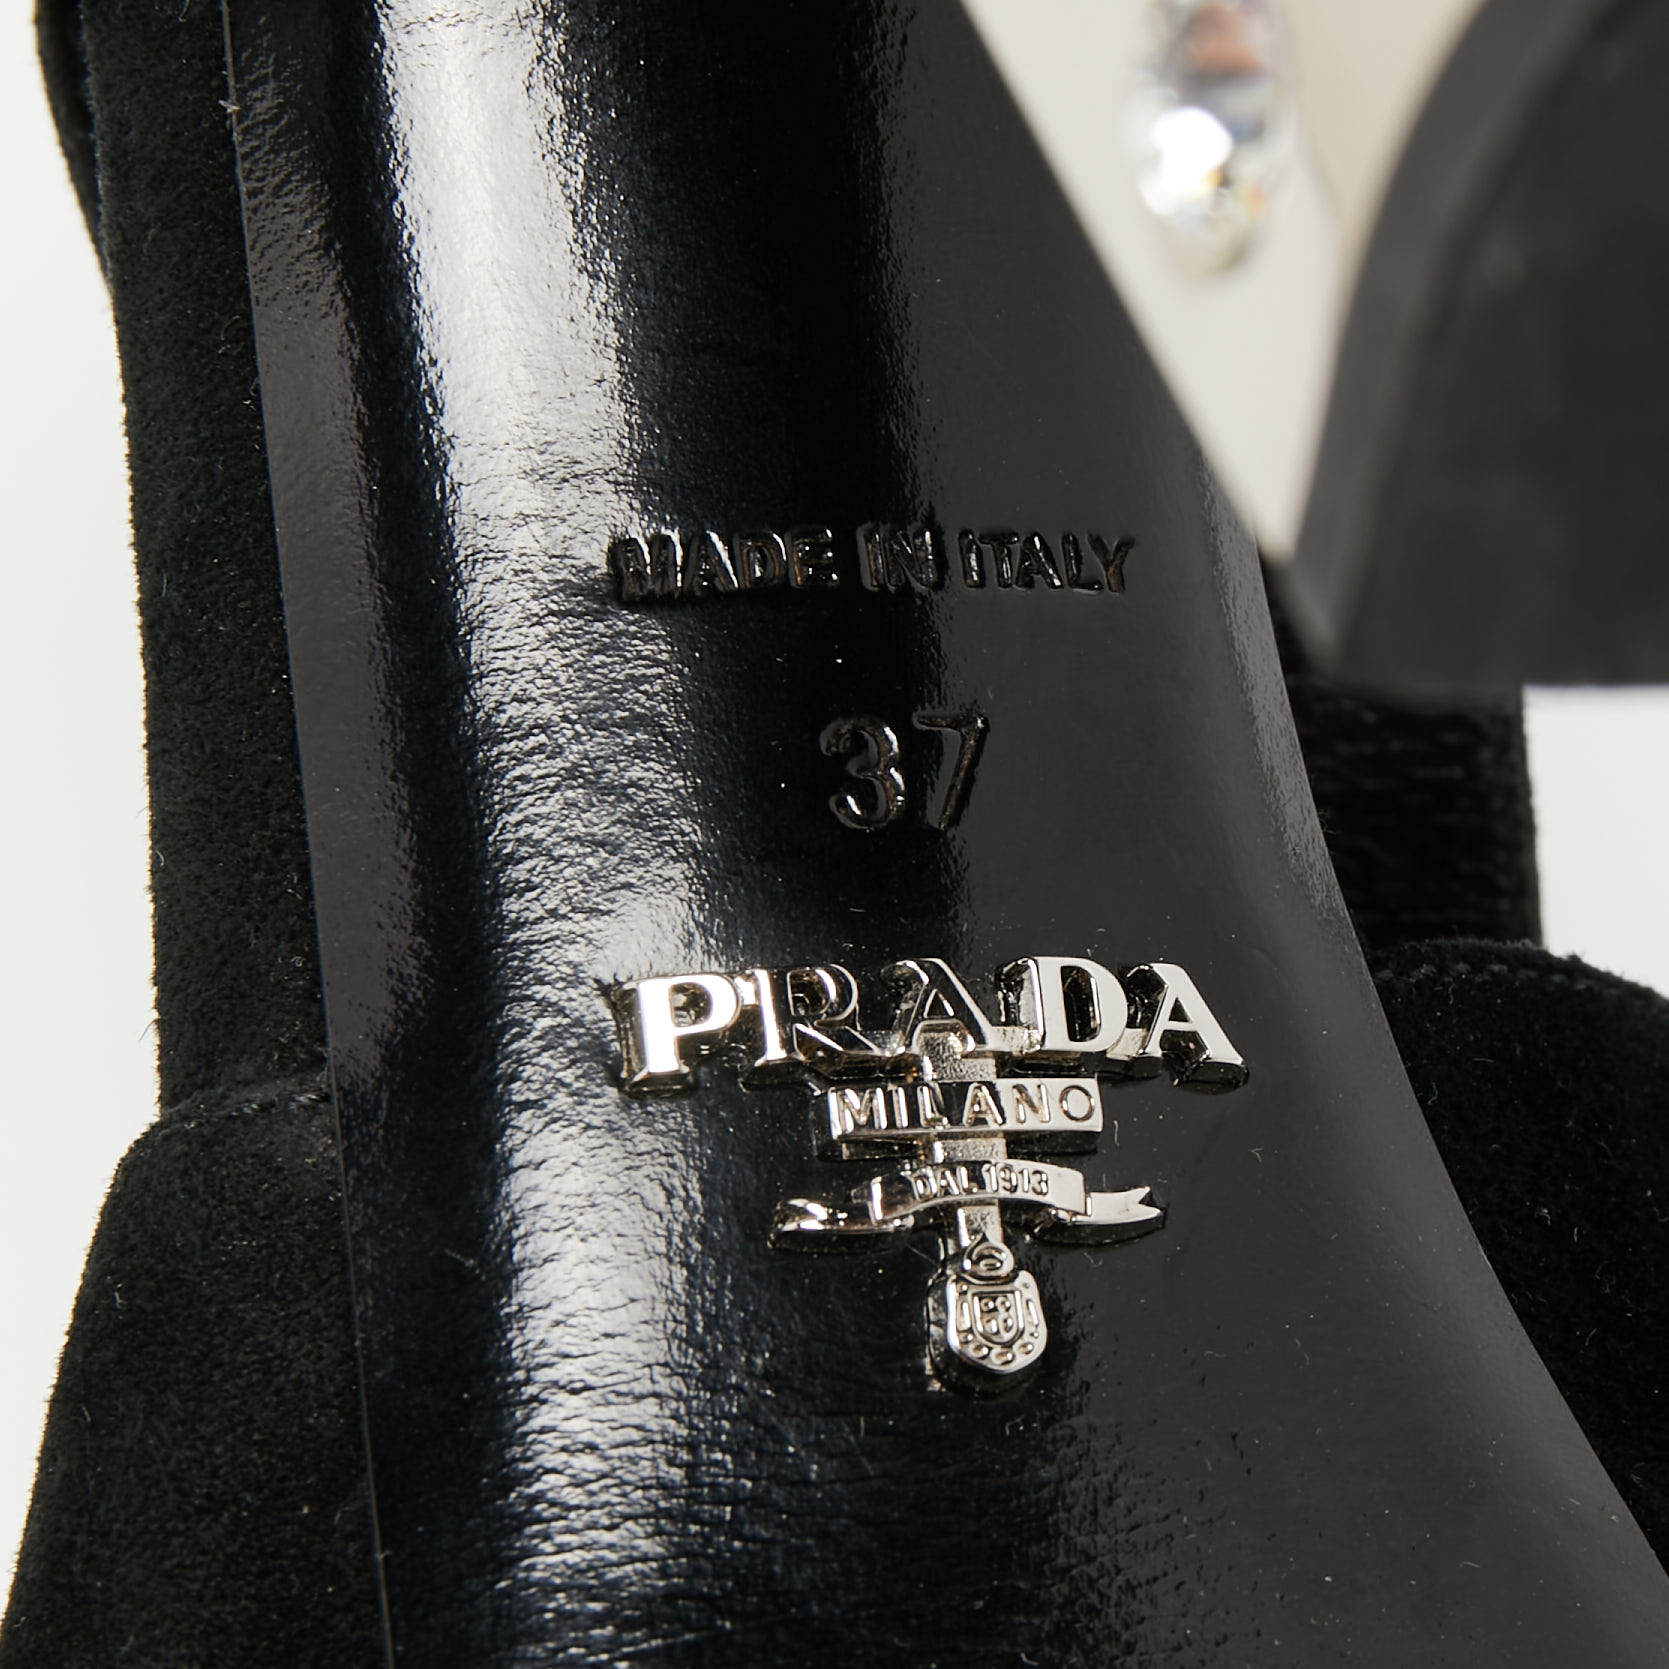 Prada Black Suede Crystal Embellished Heel Platform Slingback Sandals Size 37